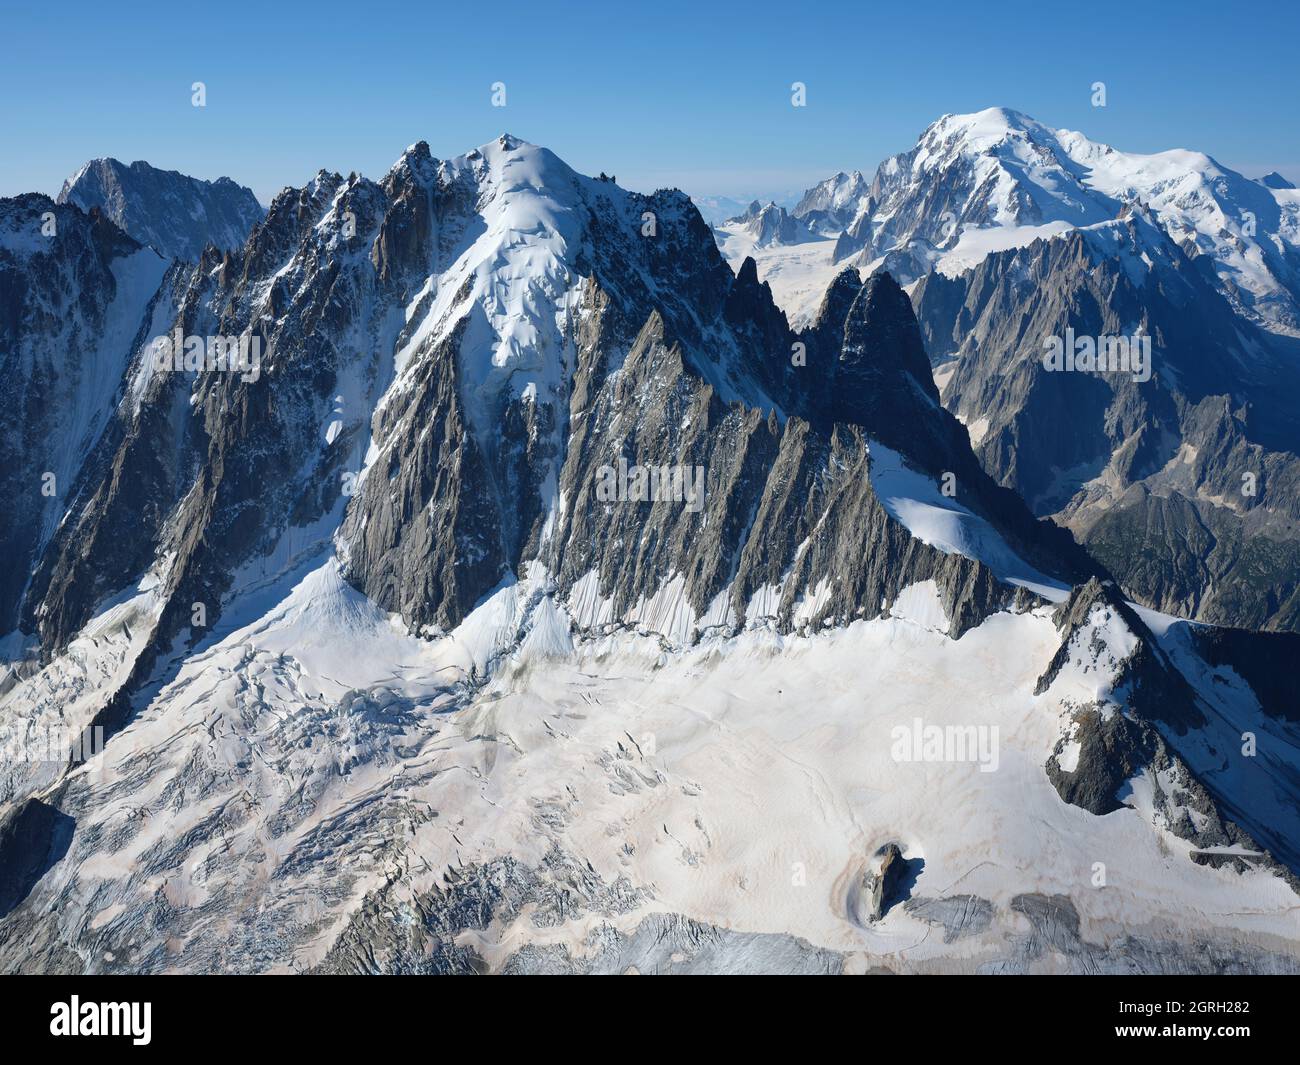 VISTA AEREA. Parete Nord di Aiguille Verte (altitudine: 4122m) con Monte Bianco (4807m) in lontananza. Chamonix, alta Savoia, Francia. Foto Stock